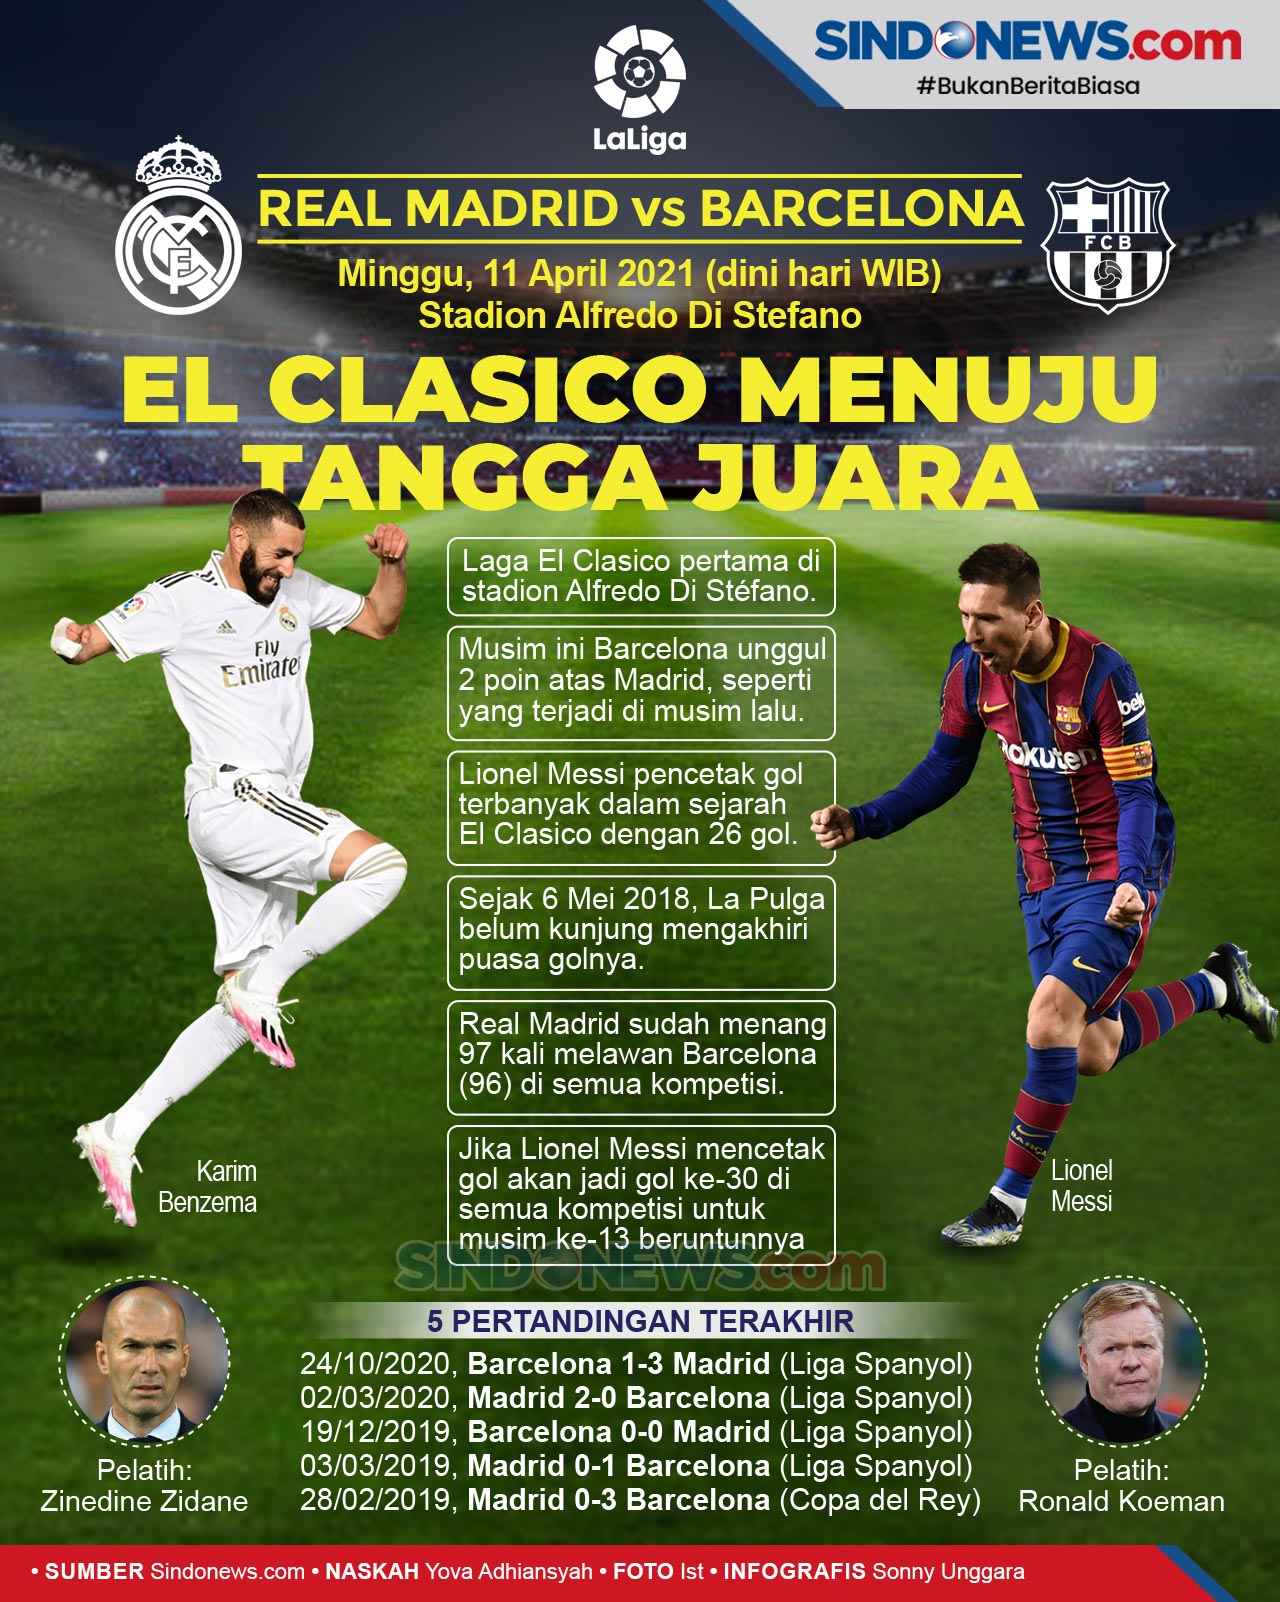 SINDOgrafis: El Clasico Real Madrid vs Barcelona, Menuju Tangga Juara